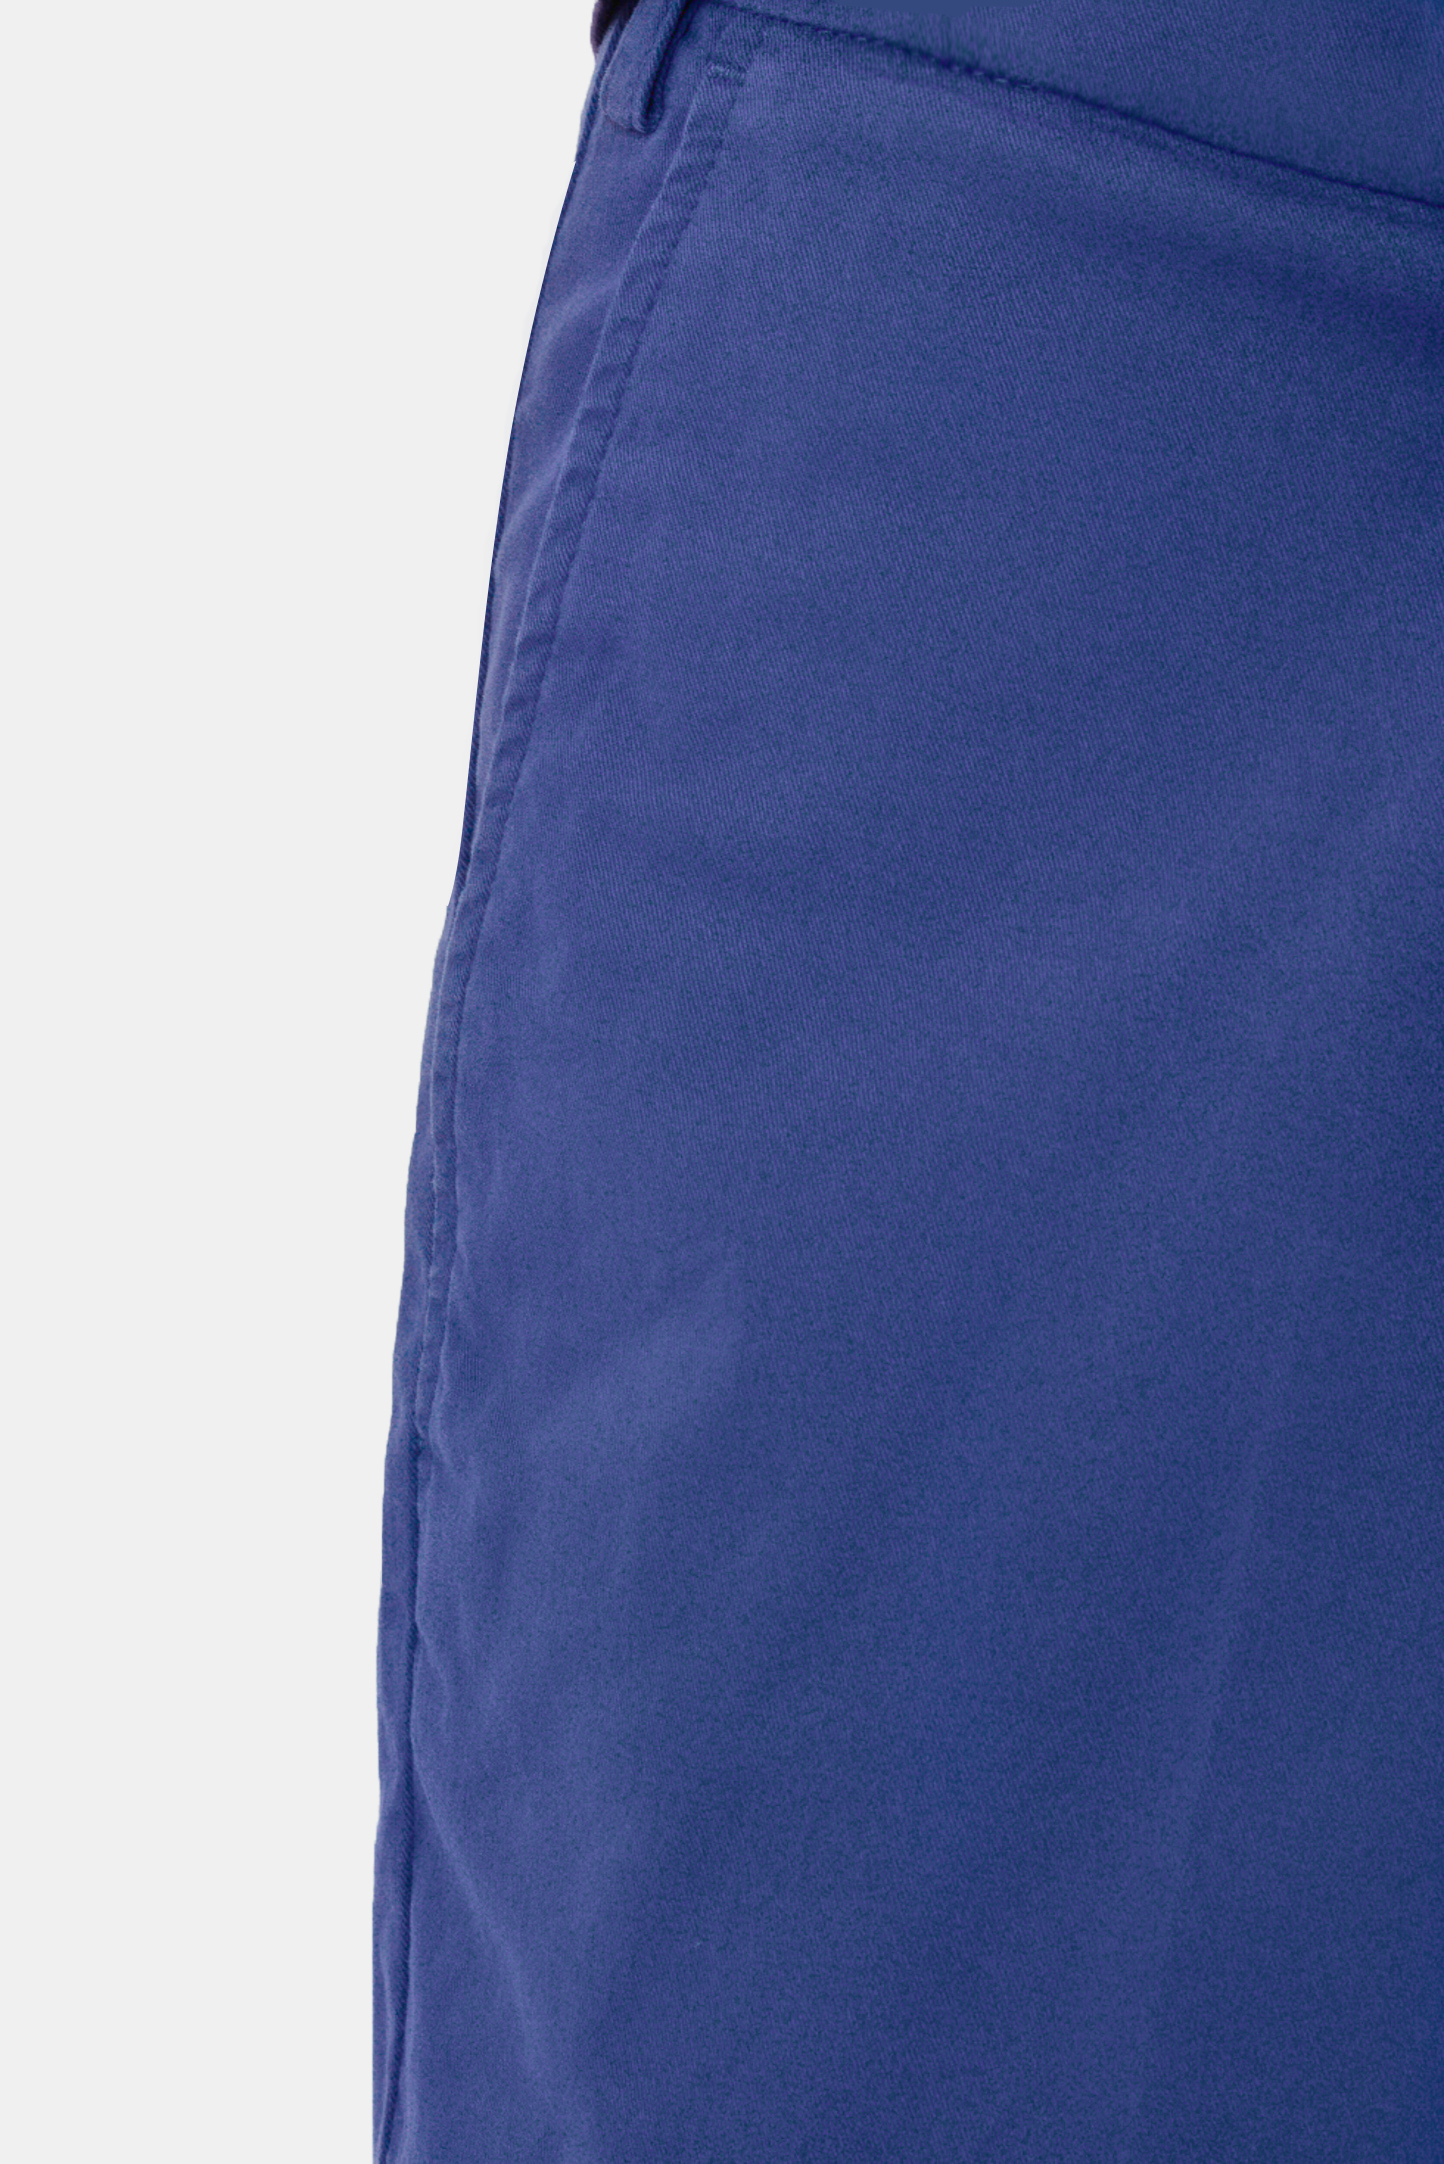 Шорты (Брюки) CANALI PT00452/321, цвет: Синий, Мужской